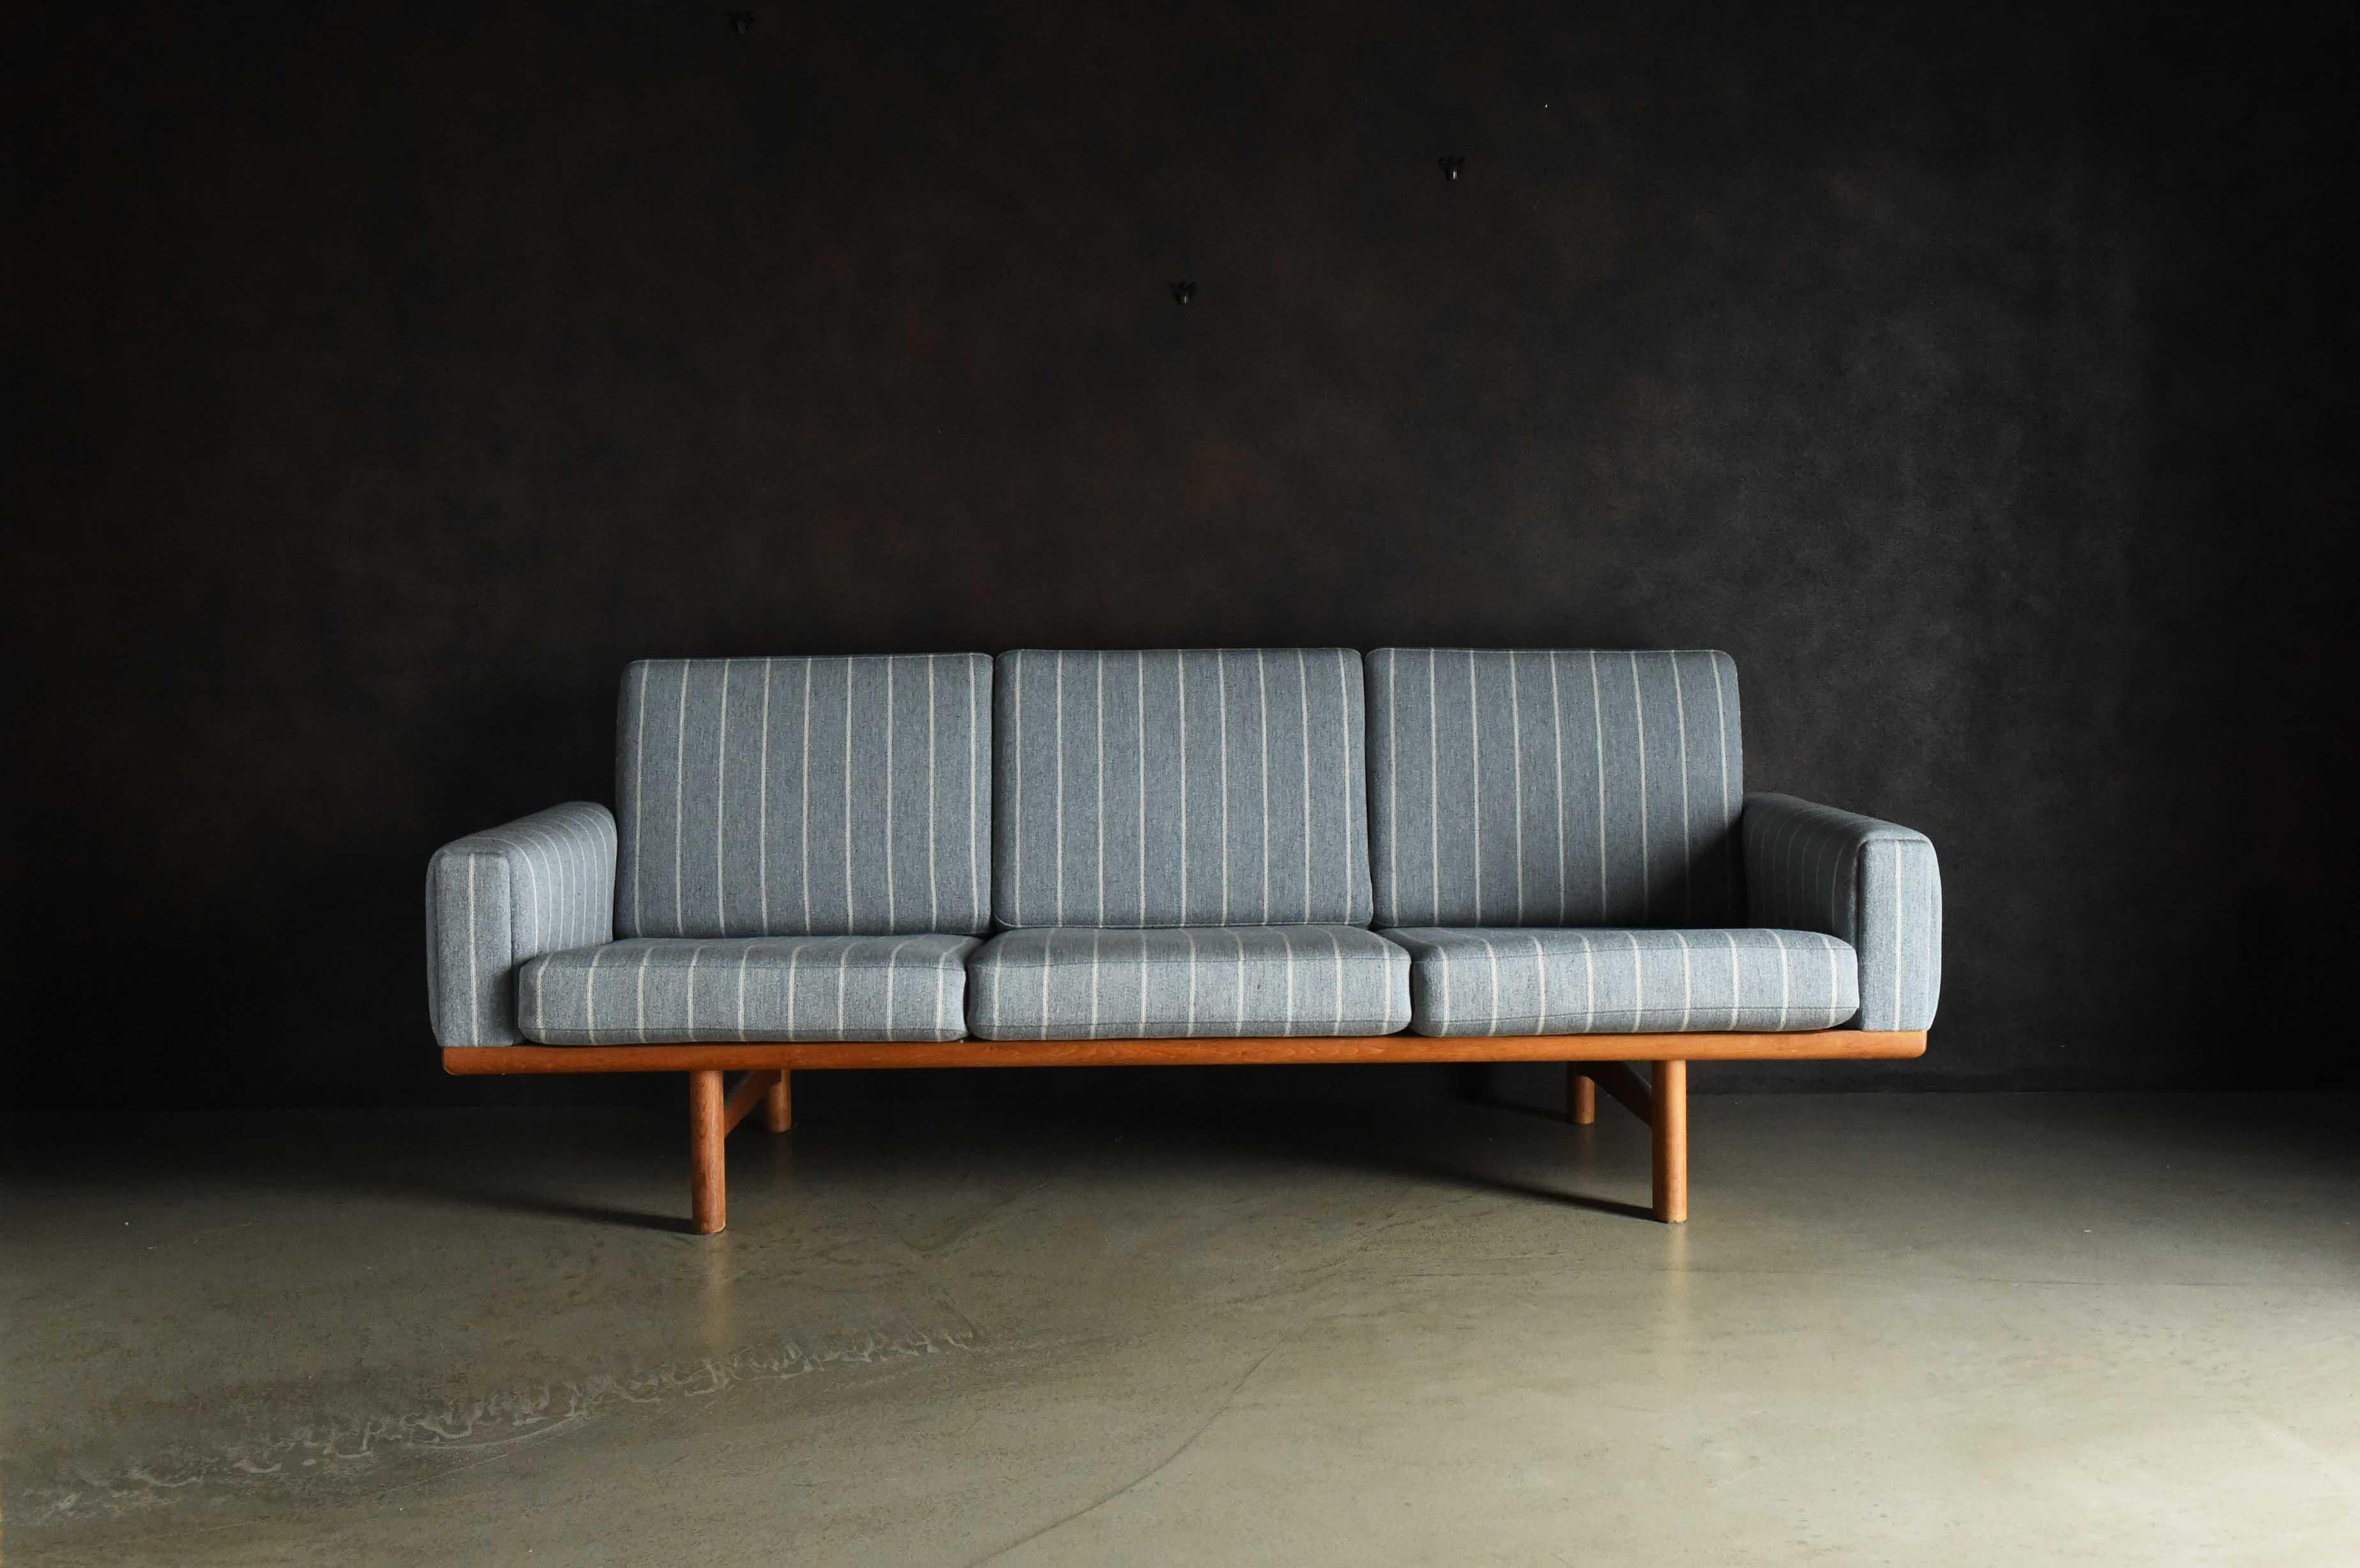 Il s'agit d'un canapé trois places fabriqué par GETAMA. Son design simple présente des lignes linéaires, mais l'assise et le dossier inclinés ont été soigneusement calculés pour minimiser les contraintes sur le corps et le bas du dos lors d'une